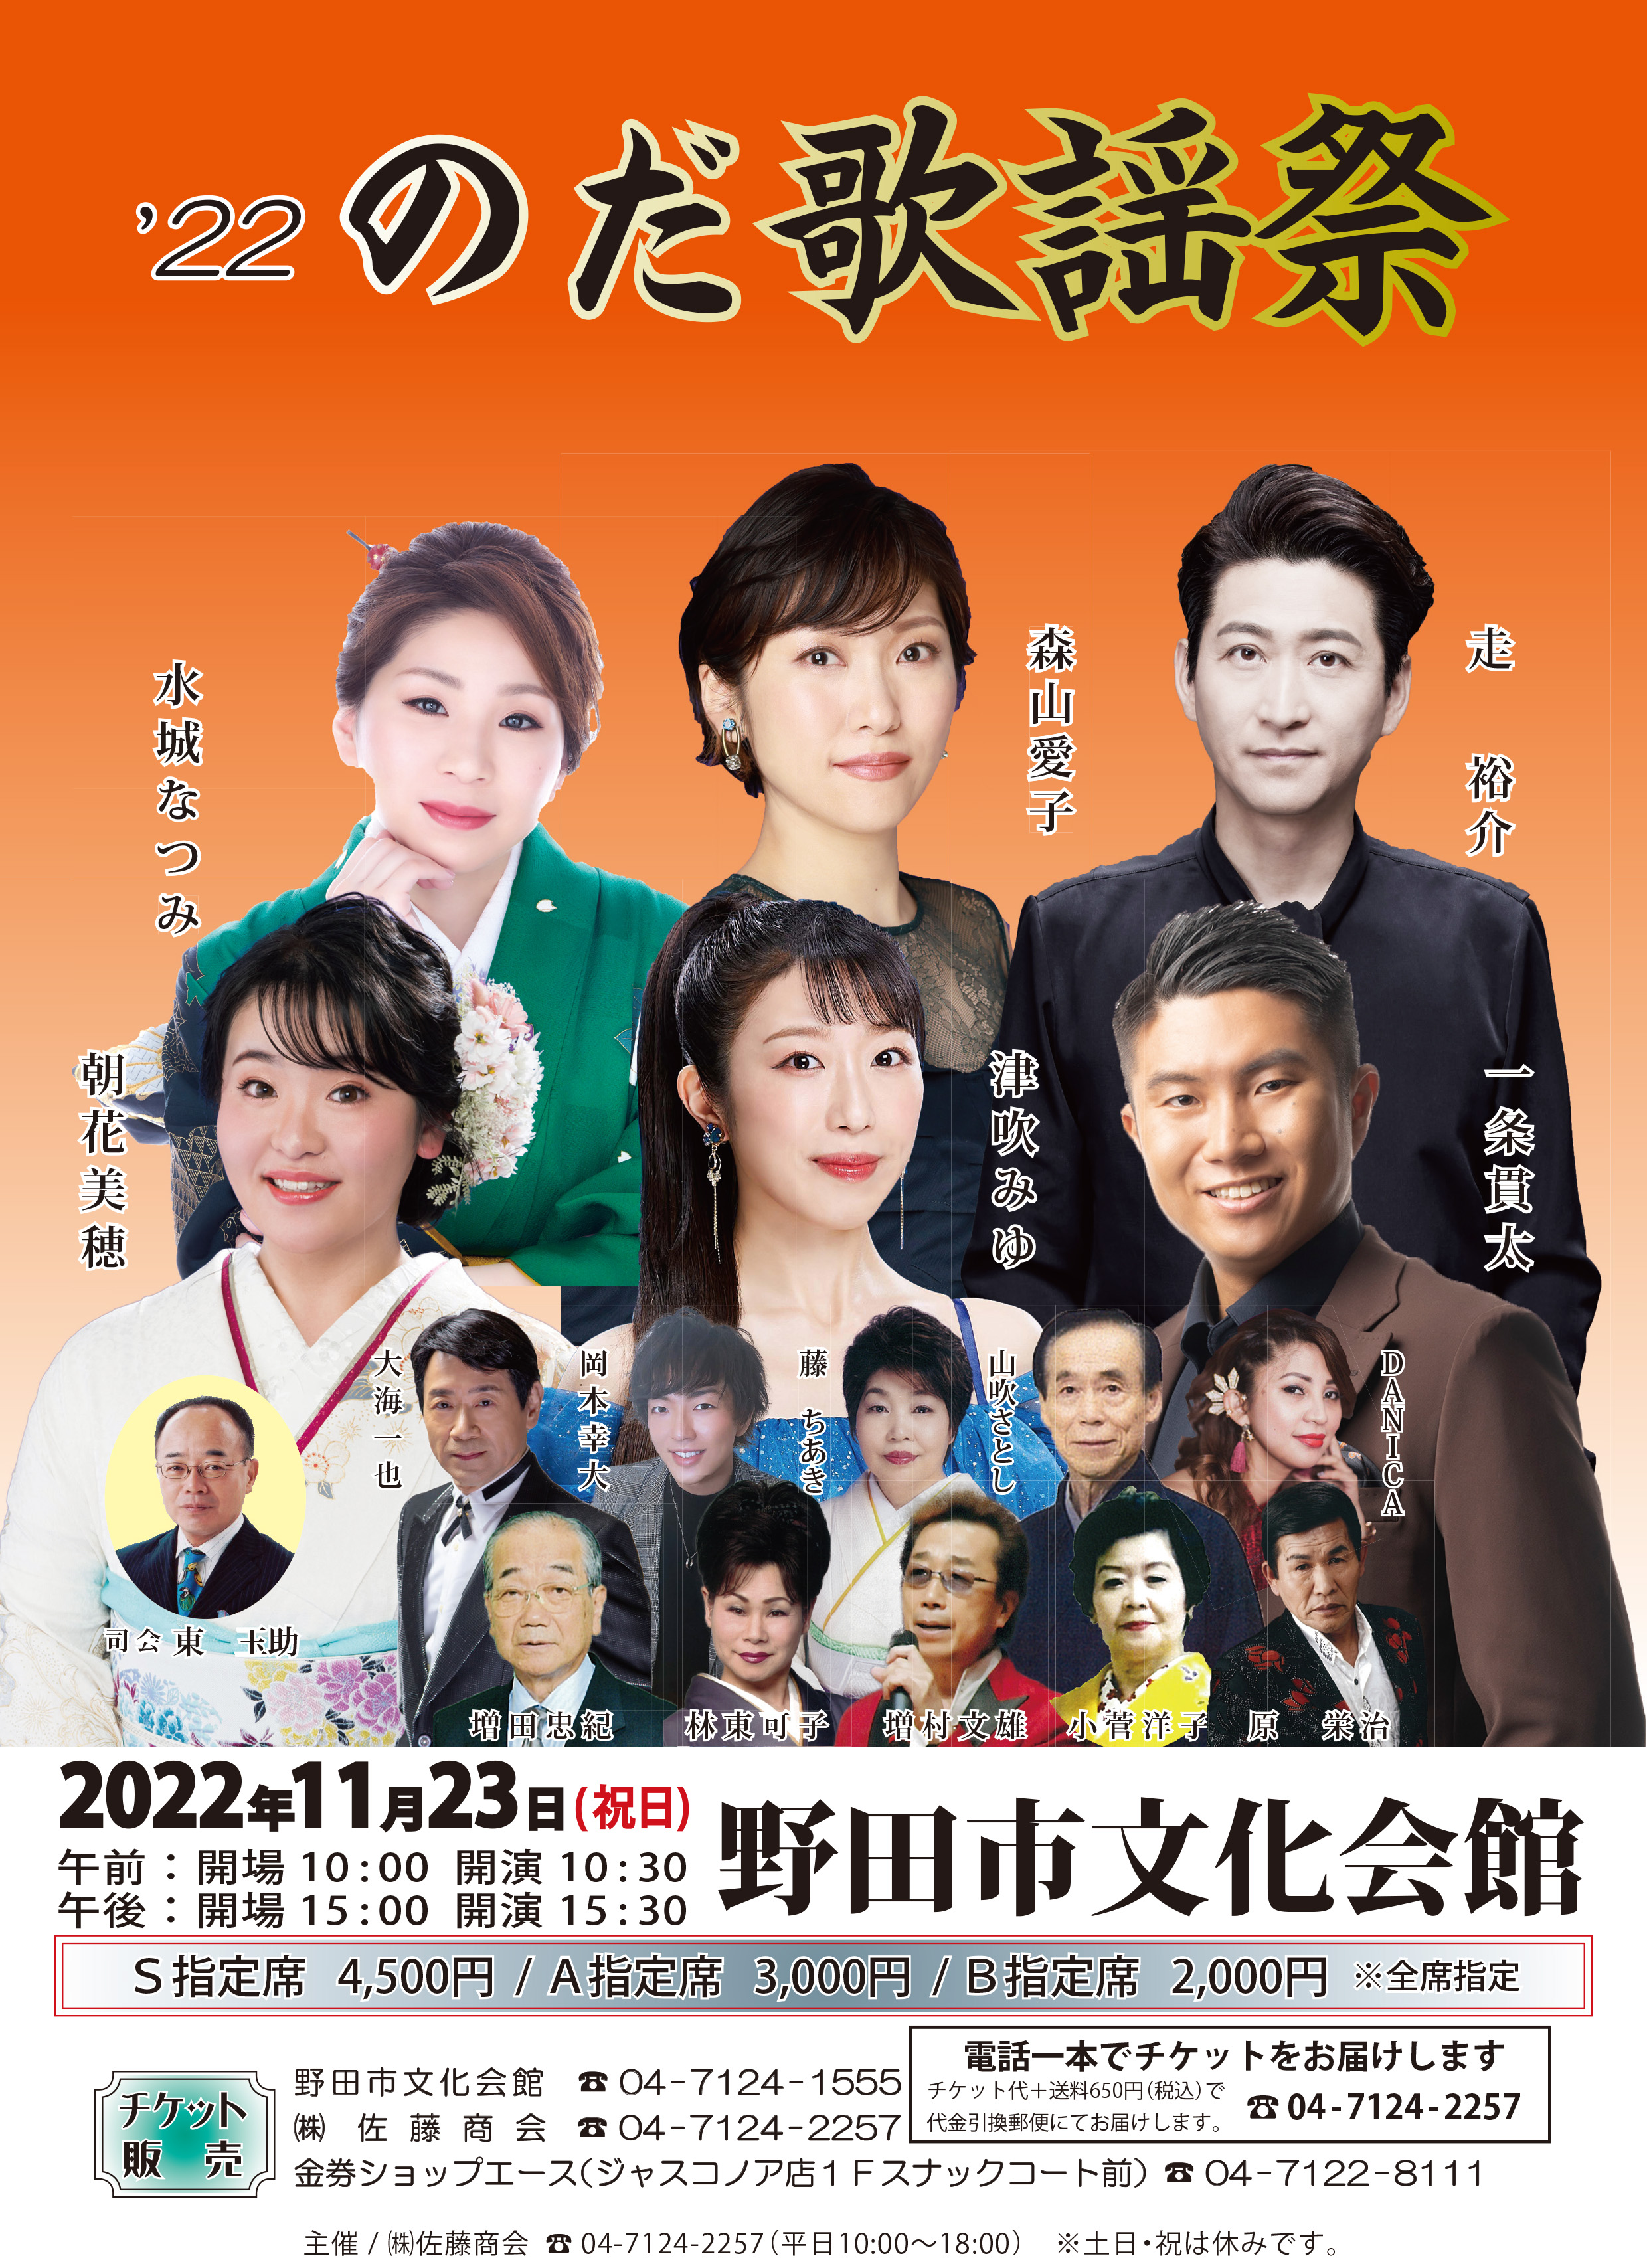 2022/11/23(水・祝) '22 のだ歌謡祭